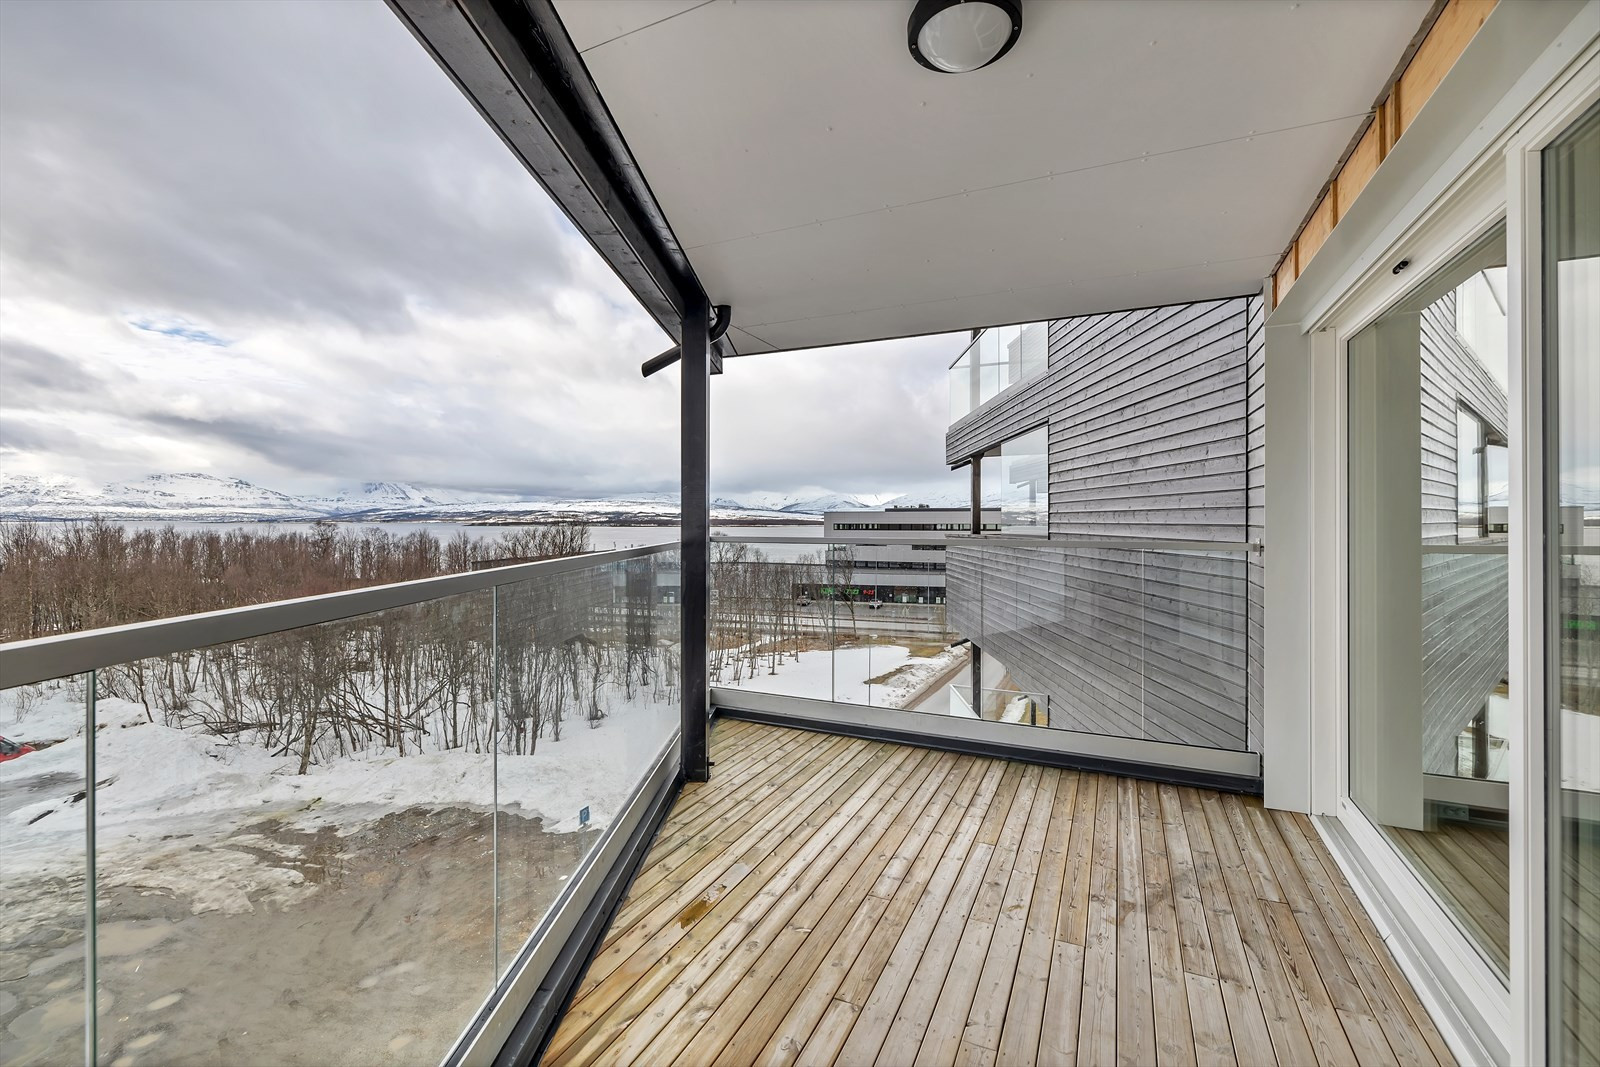 Sørvendt veranda med takoverbygg - utsikt mot Sandnessundet og Kvaløya.